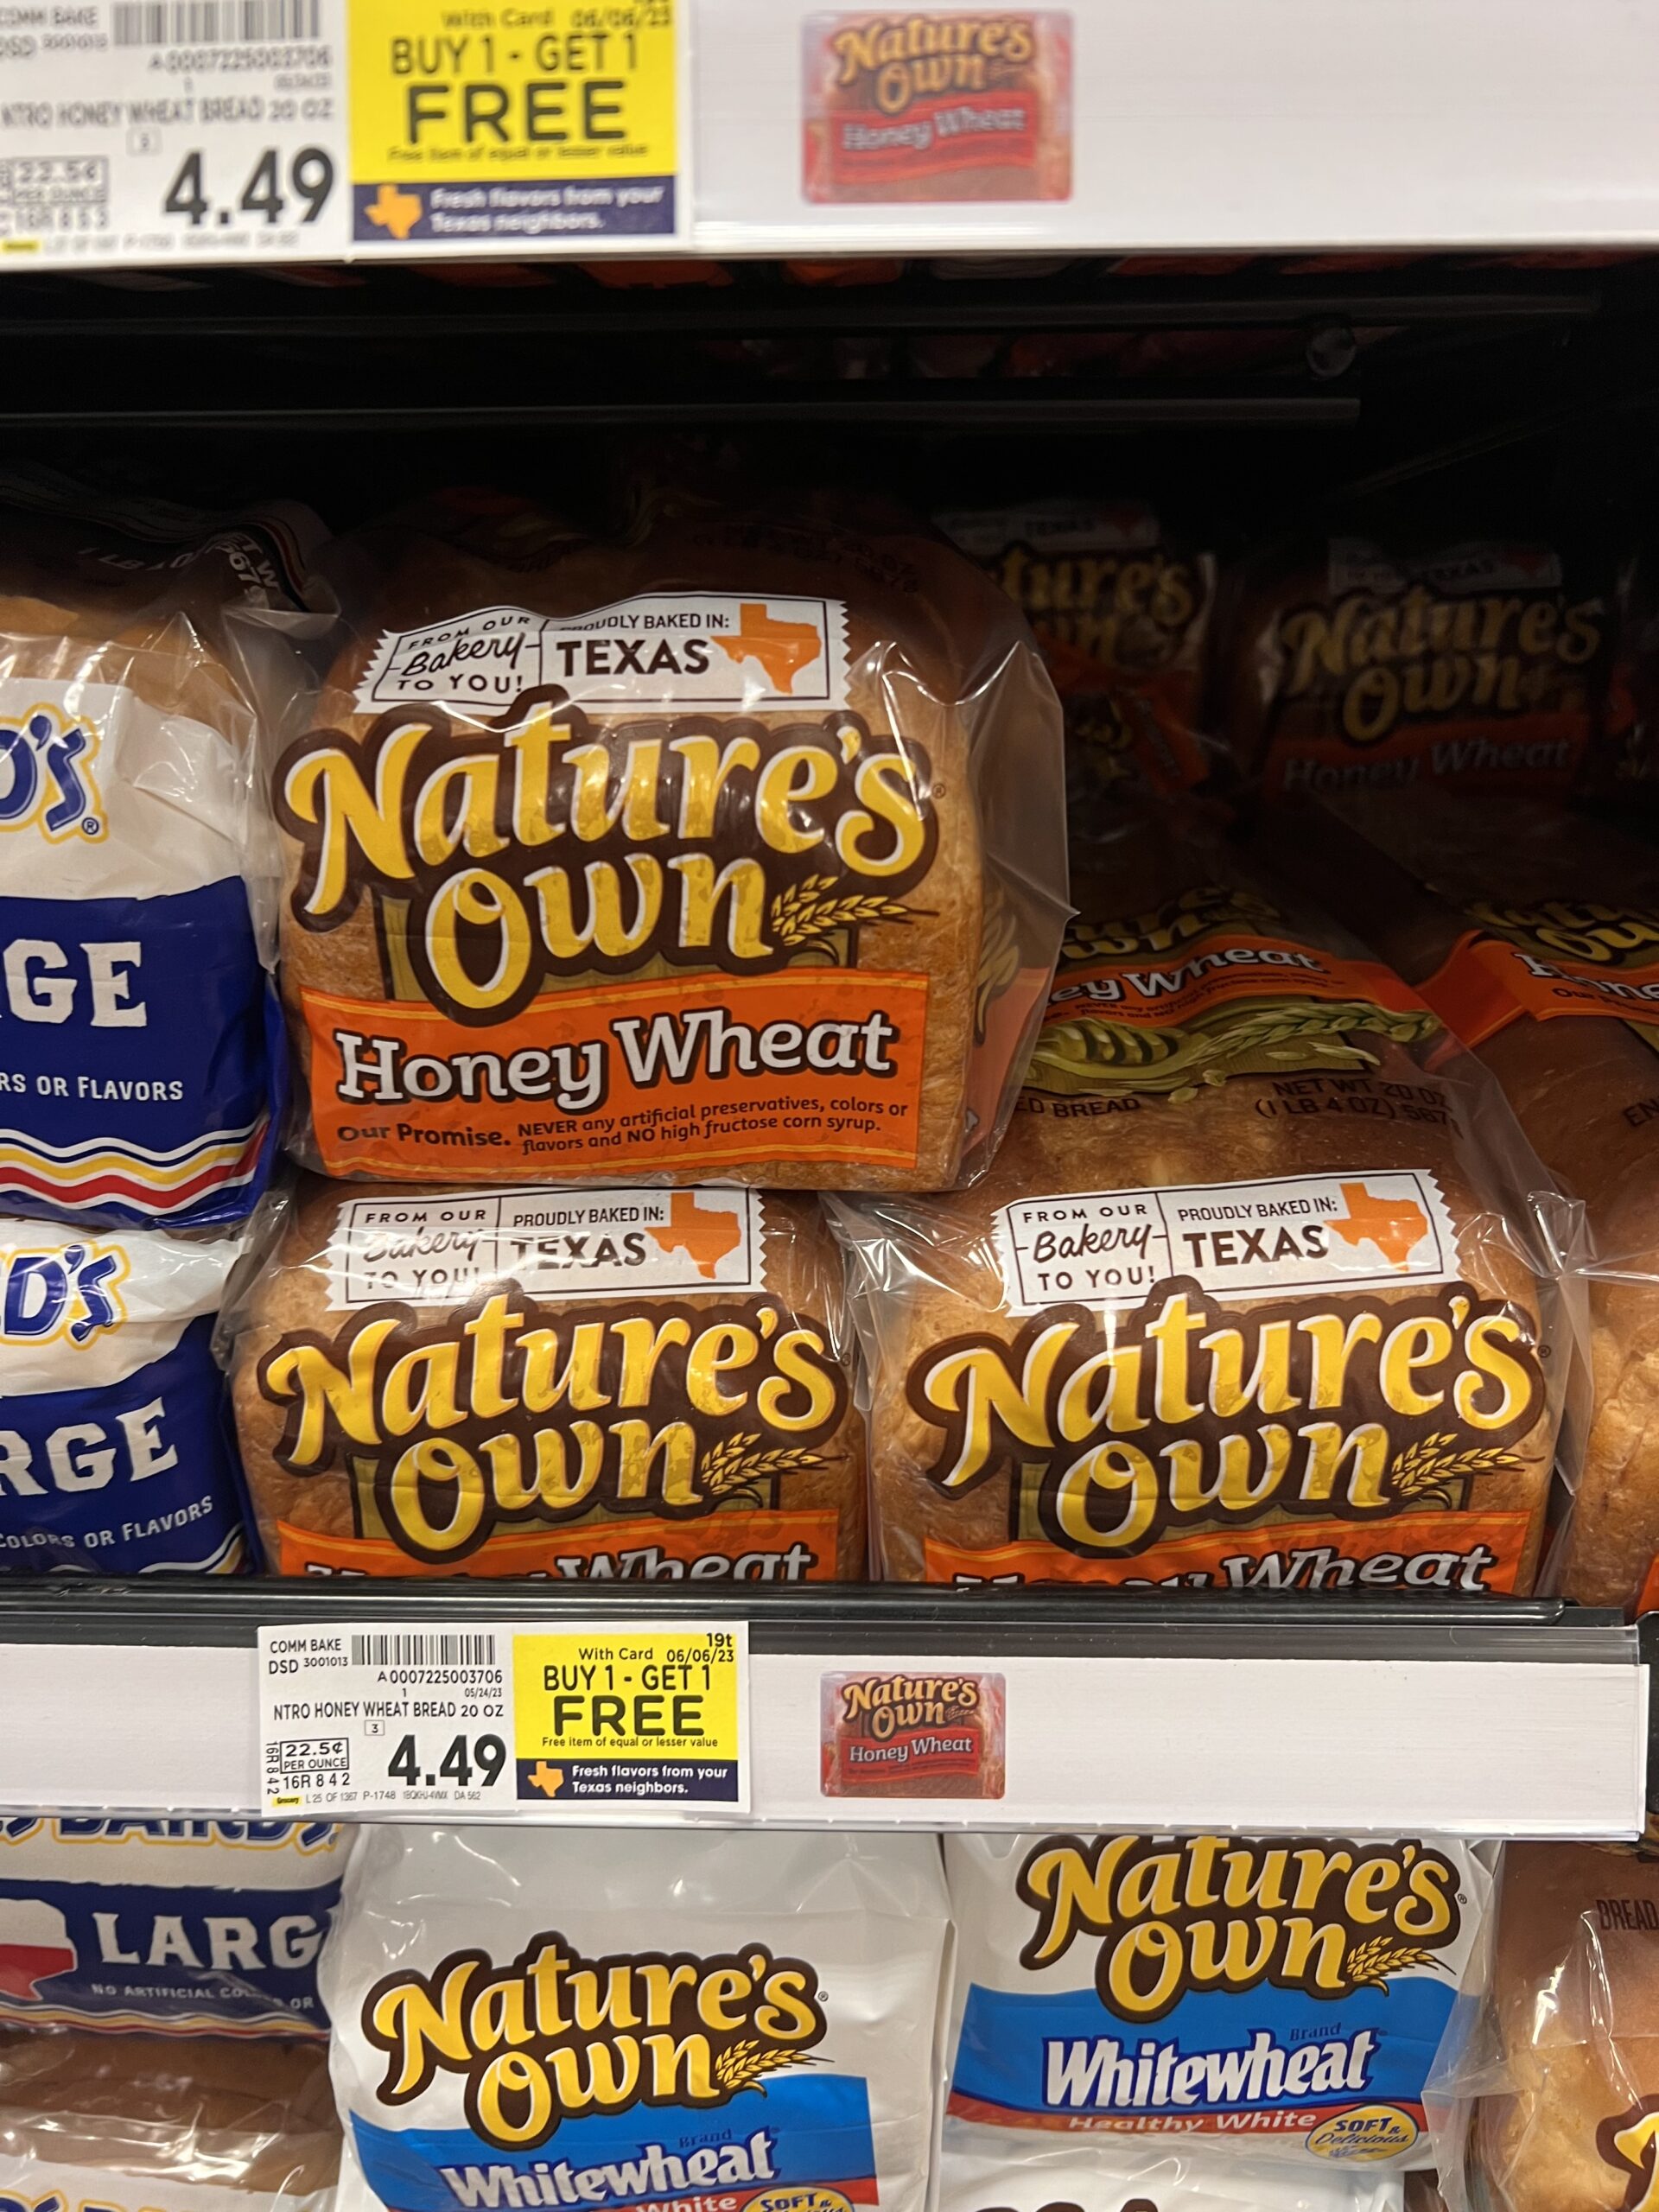 natures own bread kroger shelf image 1